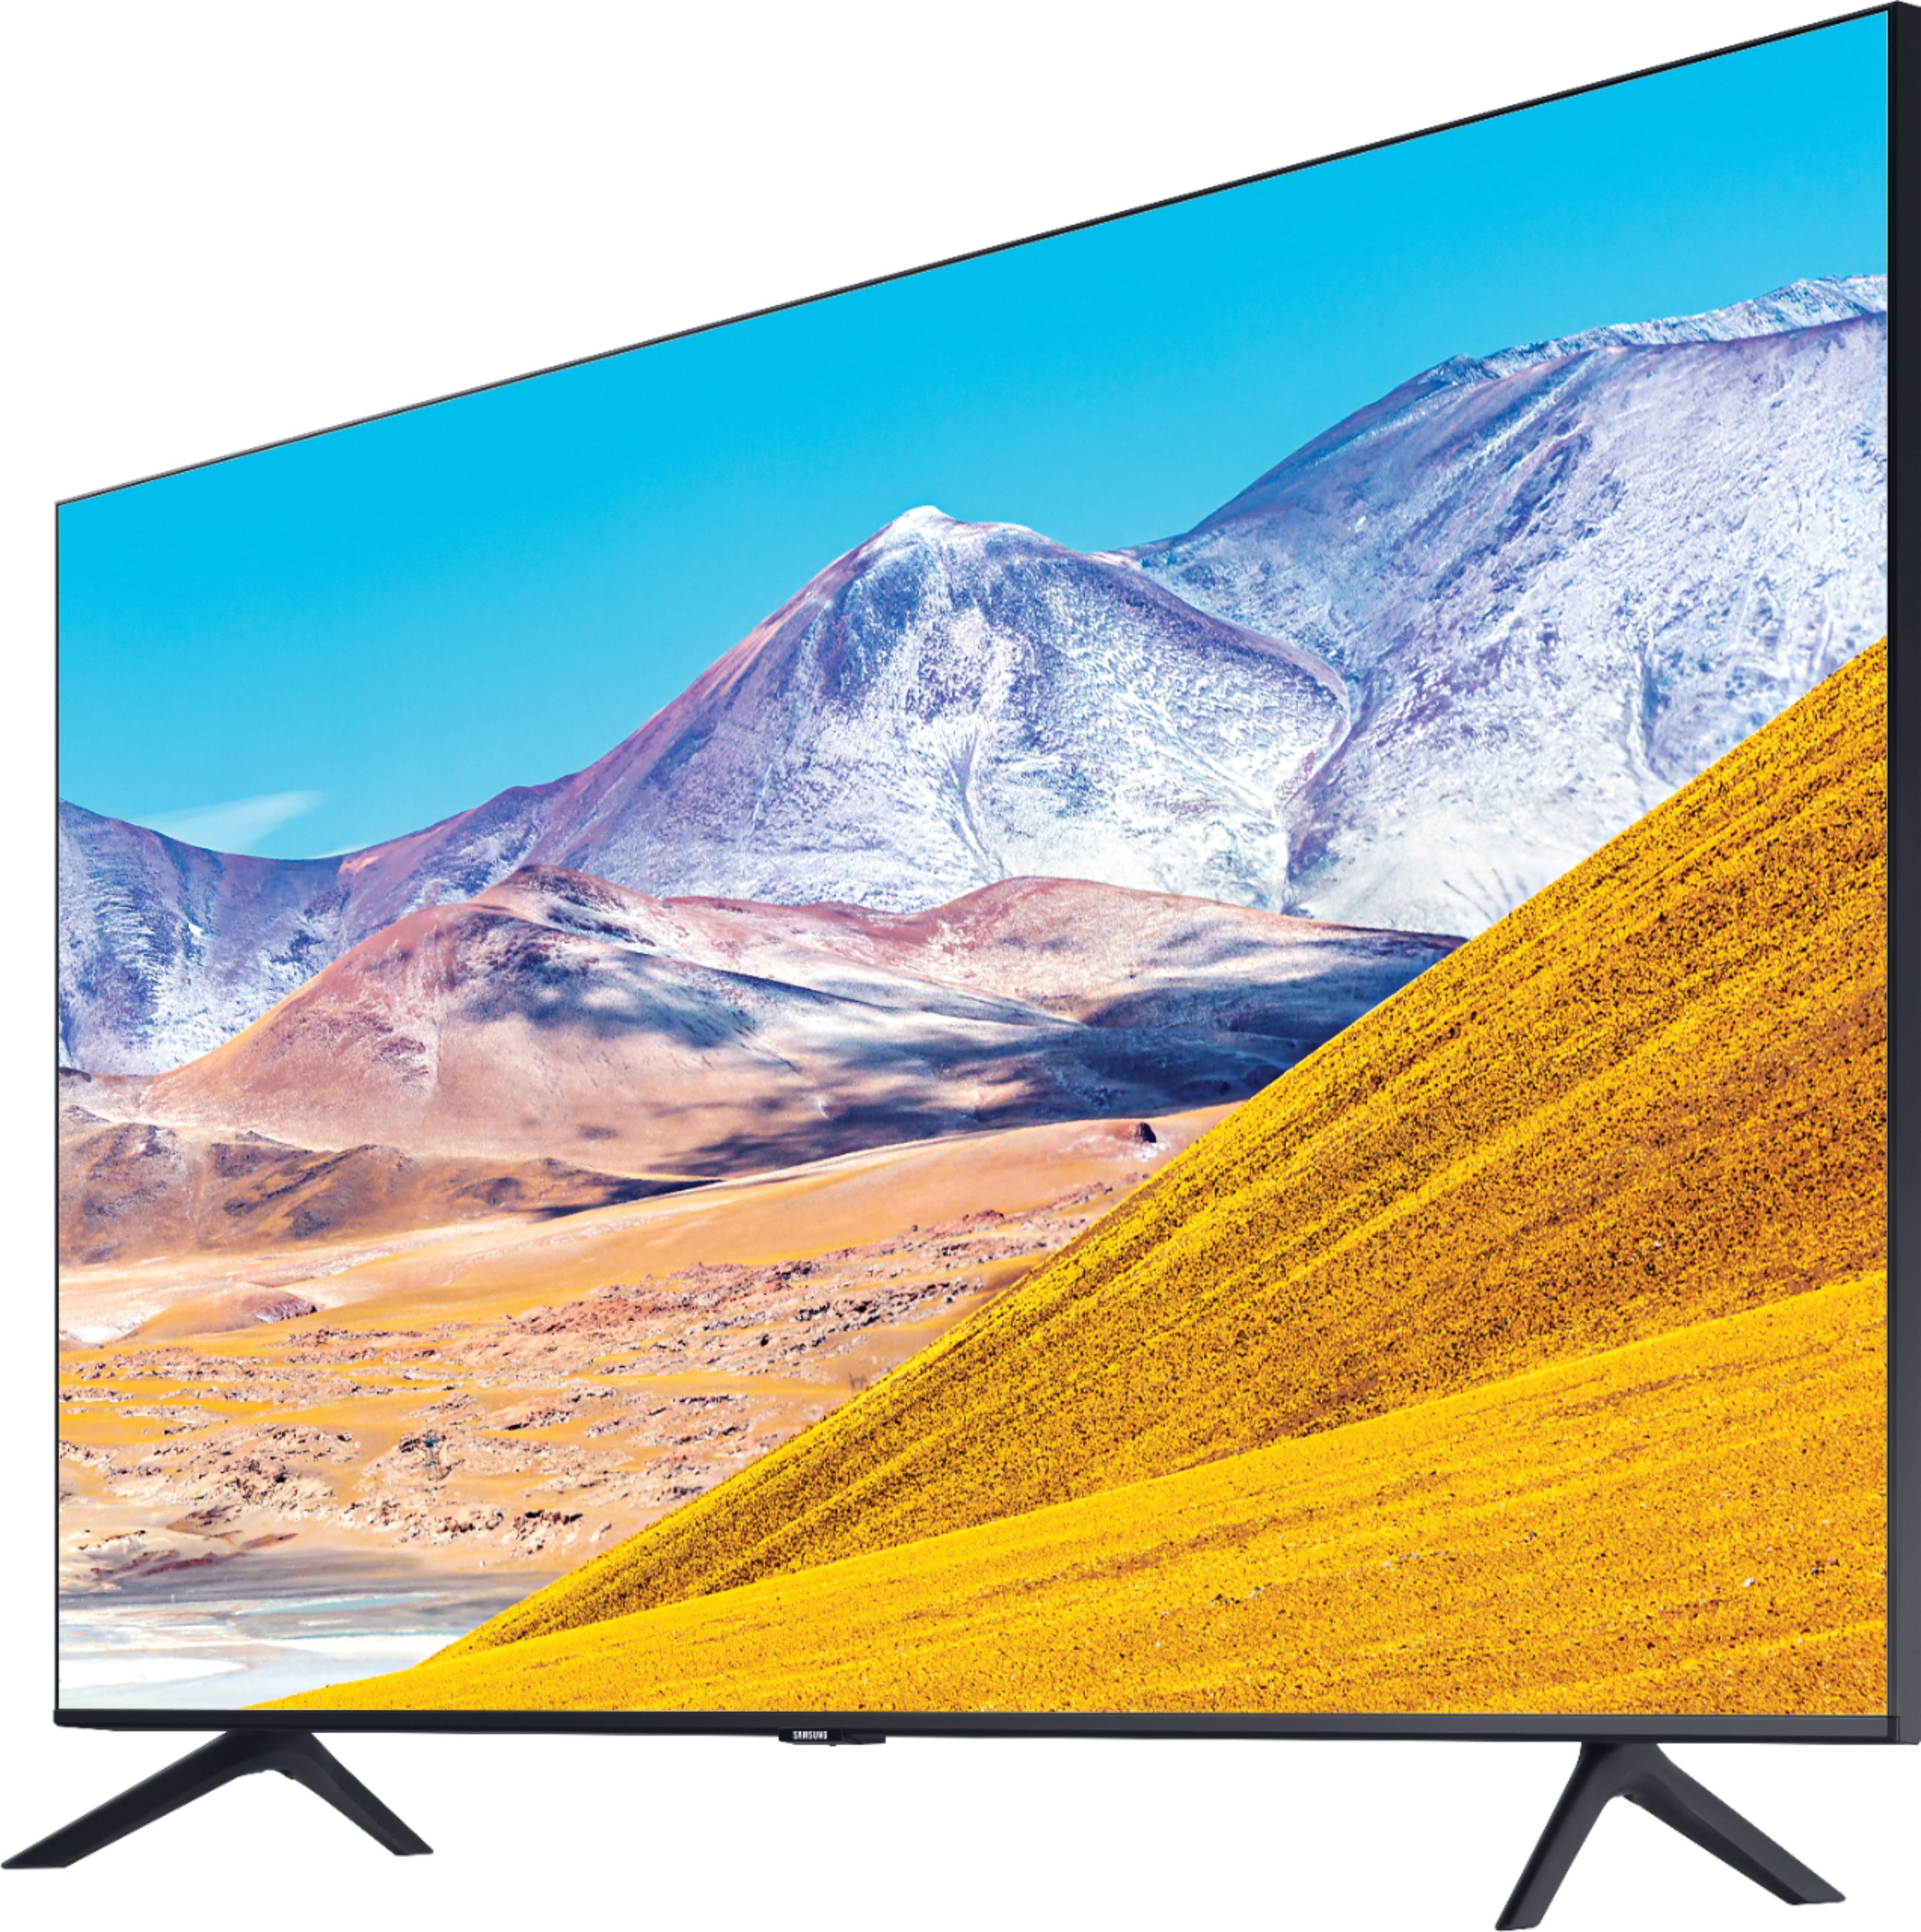 Left View: Samsung - 43" Class 8 Series LED 4K UHD Smart Tizen TV